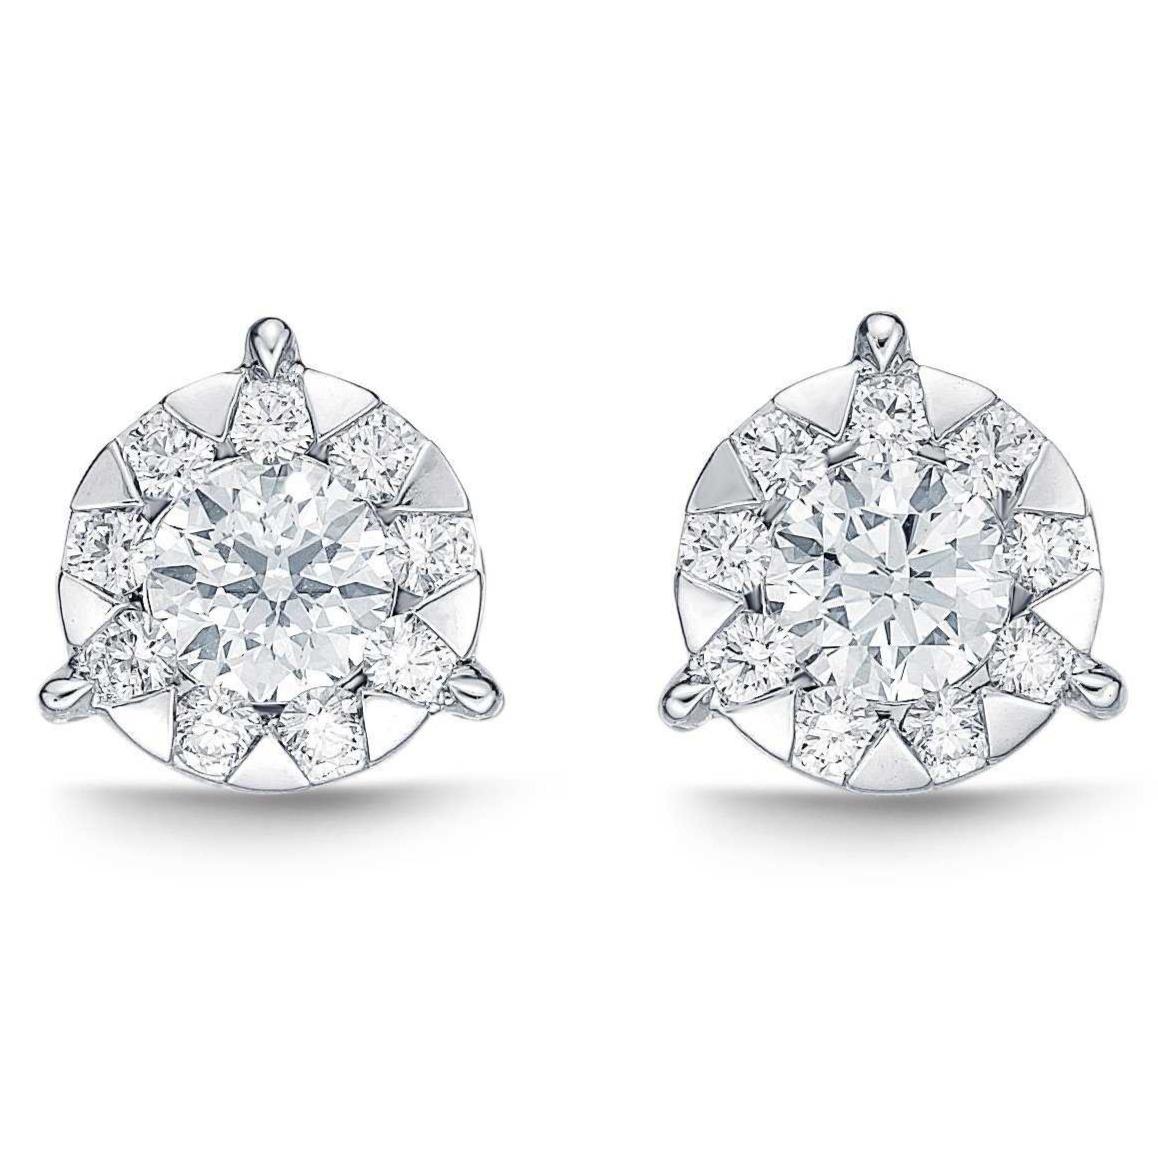 Ces boucles d'oreilles en diamant de la collection Memoire Bouquet 1,33 ctw avec 6 carats TW ont été serties dans de l'or blanc 18 carats, avec 20 diamants ronds de taille brillant. Avec ses 1,33 ctw, chaque diamant offre l'apparence d'une boucle